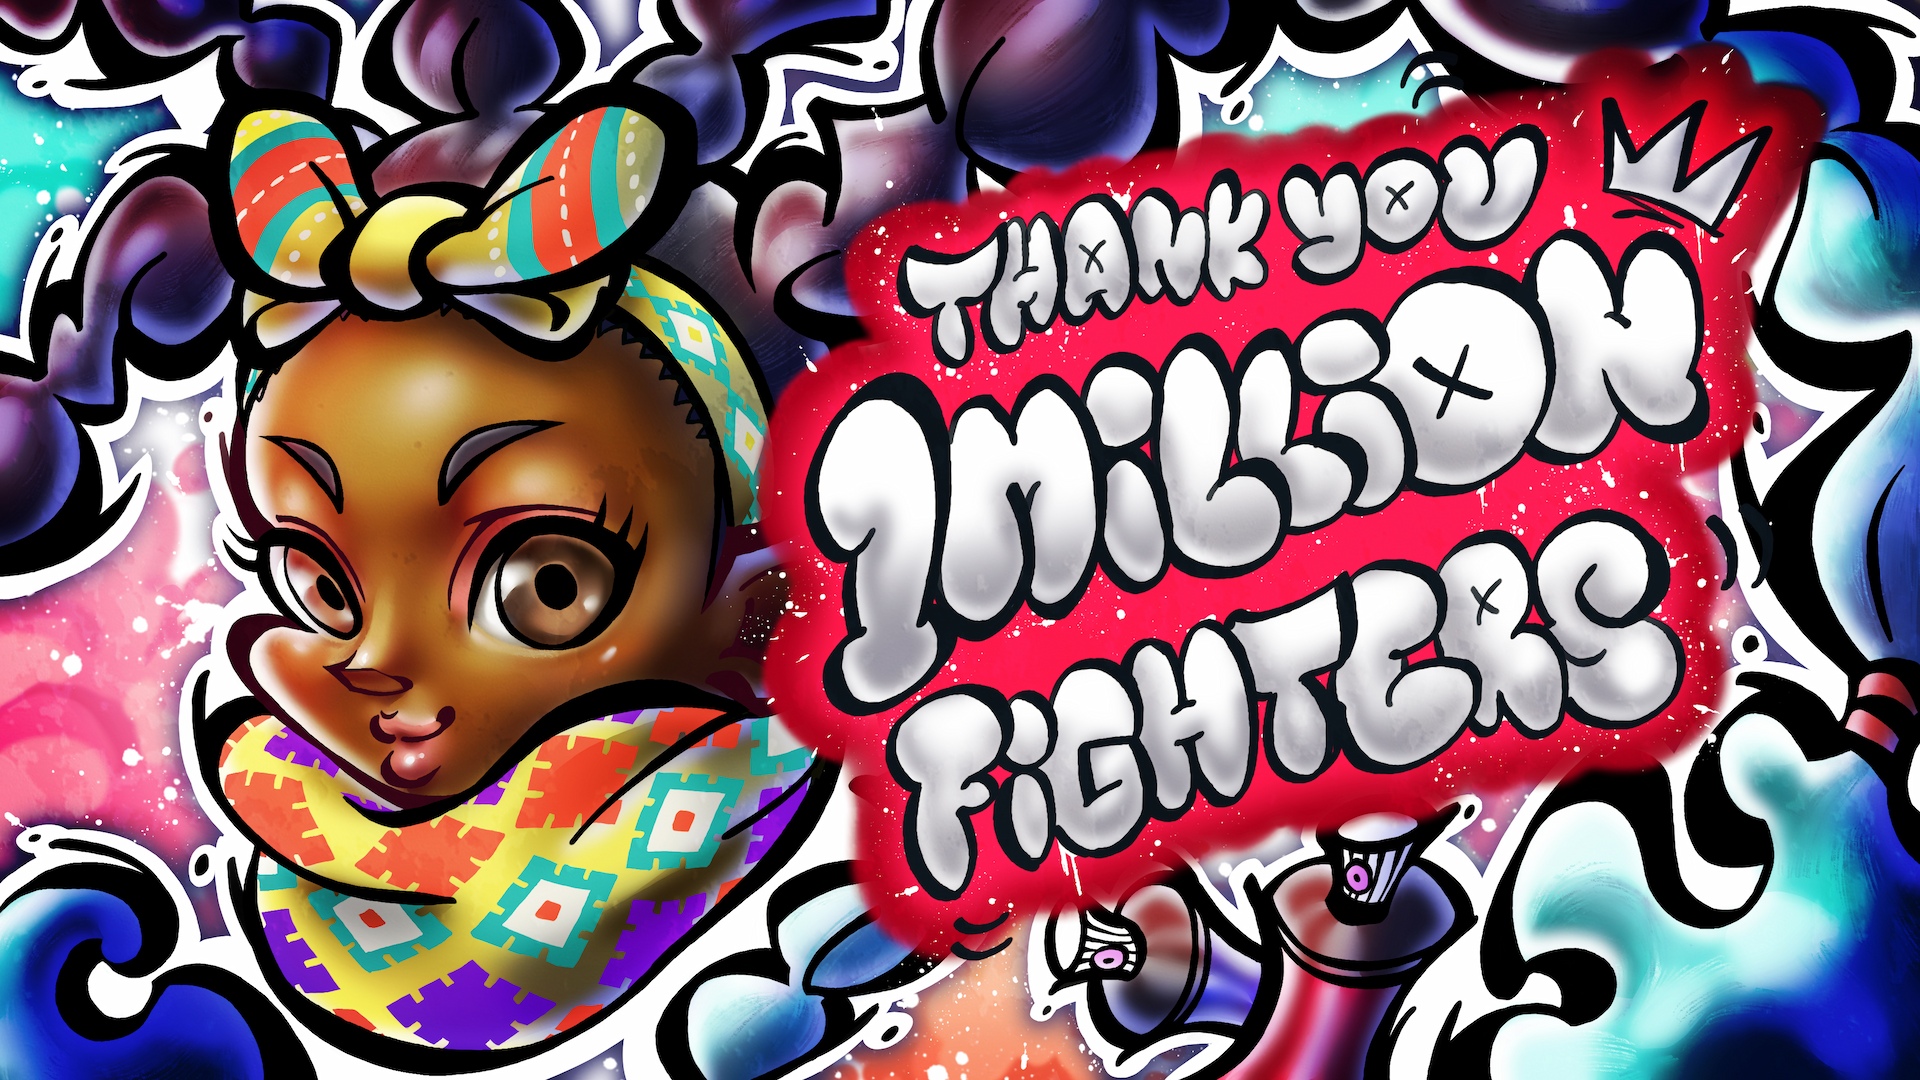 Arte gráfico que celebra Street Fighter 6 llegando a más de un millón de jugadores